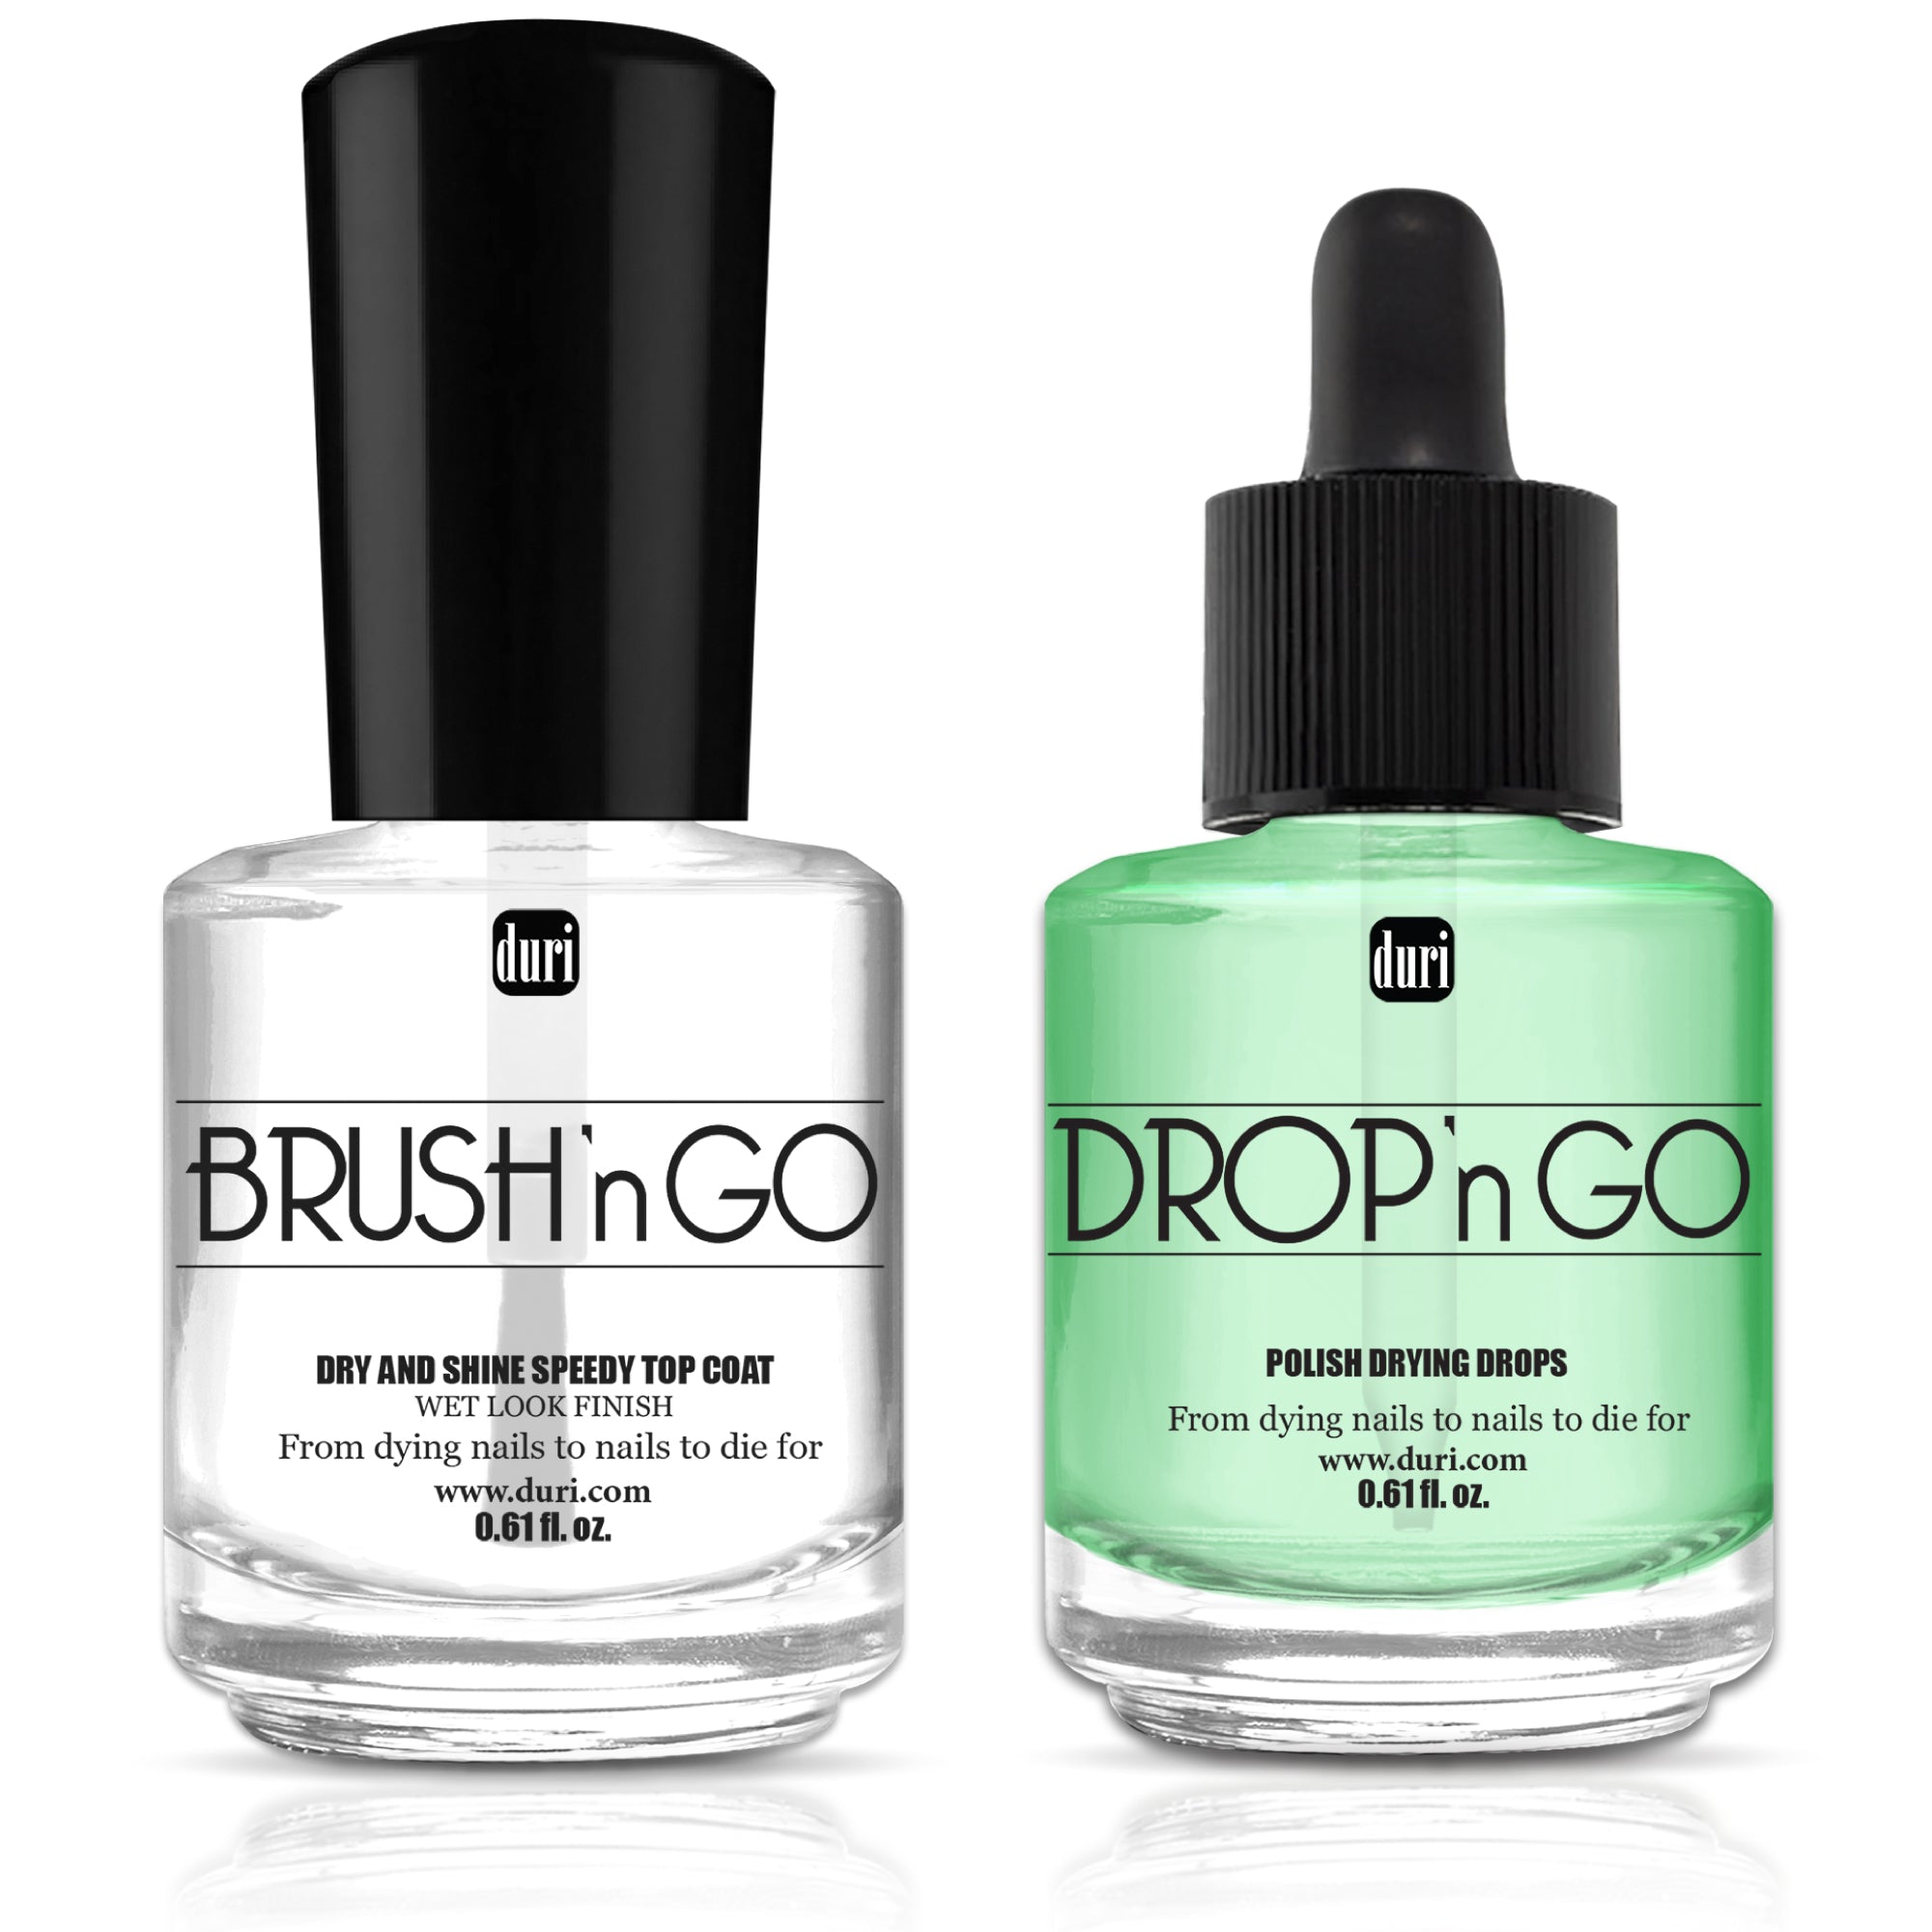 Brush’n GO Dry & Shine Speedy Top Coat + Drop'n Go Polish Drying Drops, 0.61 fl.oz. each